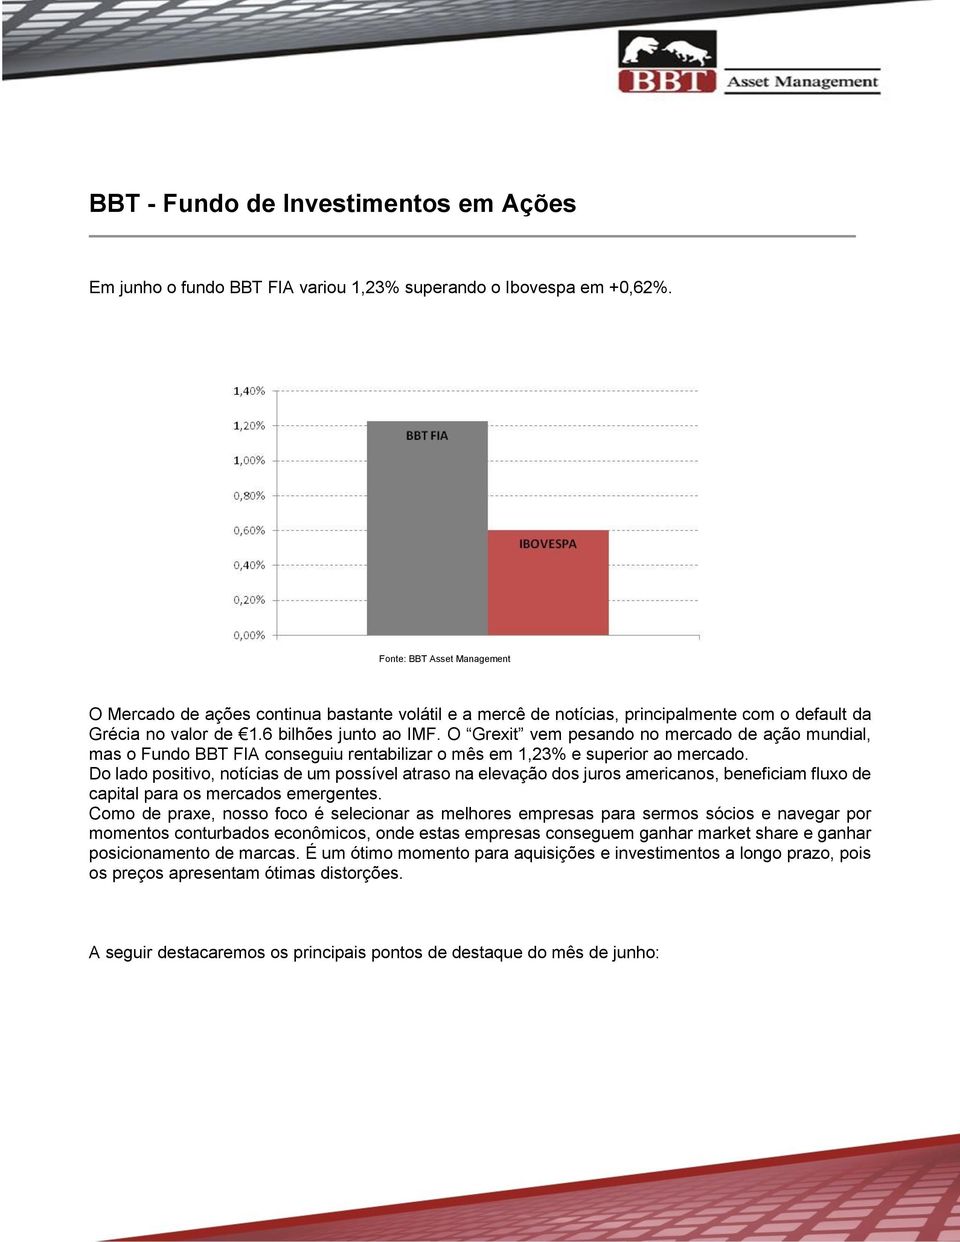 O Grexit vem pesando no mercado de ação mundial, mas o Fundo BBT FIA conseguiu rentabilizar o mês em 1,23% e superior ao mercado.